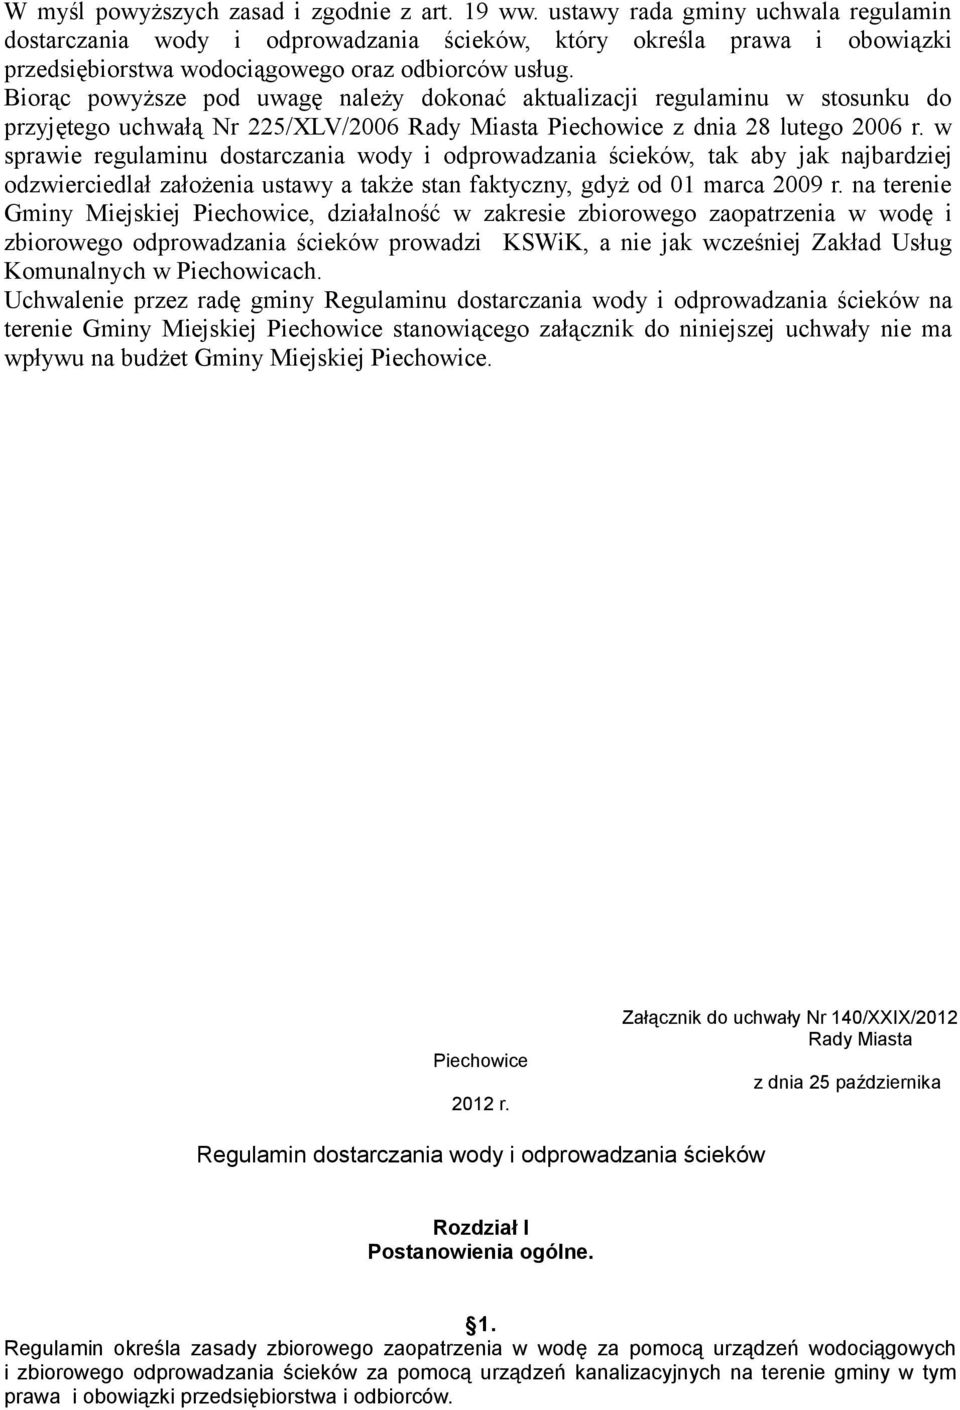 Biorąc powyższe pod uwagę należy dokonać aktualizacji regulaminu w stosunku do przyjętego uchwałą Nr 225/XLV/2006 Rady Miasta Piechowice z dnia 28 lutego 2006 r.